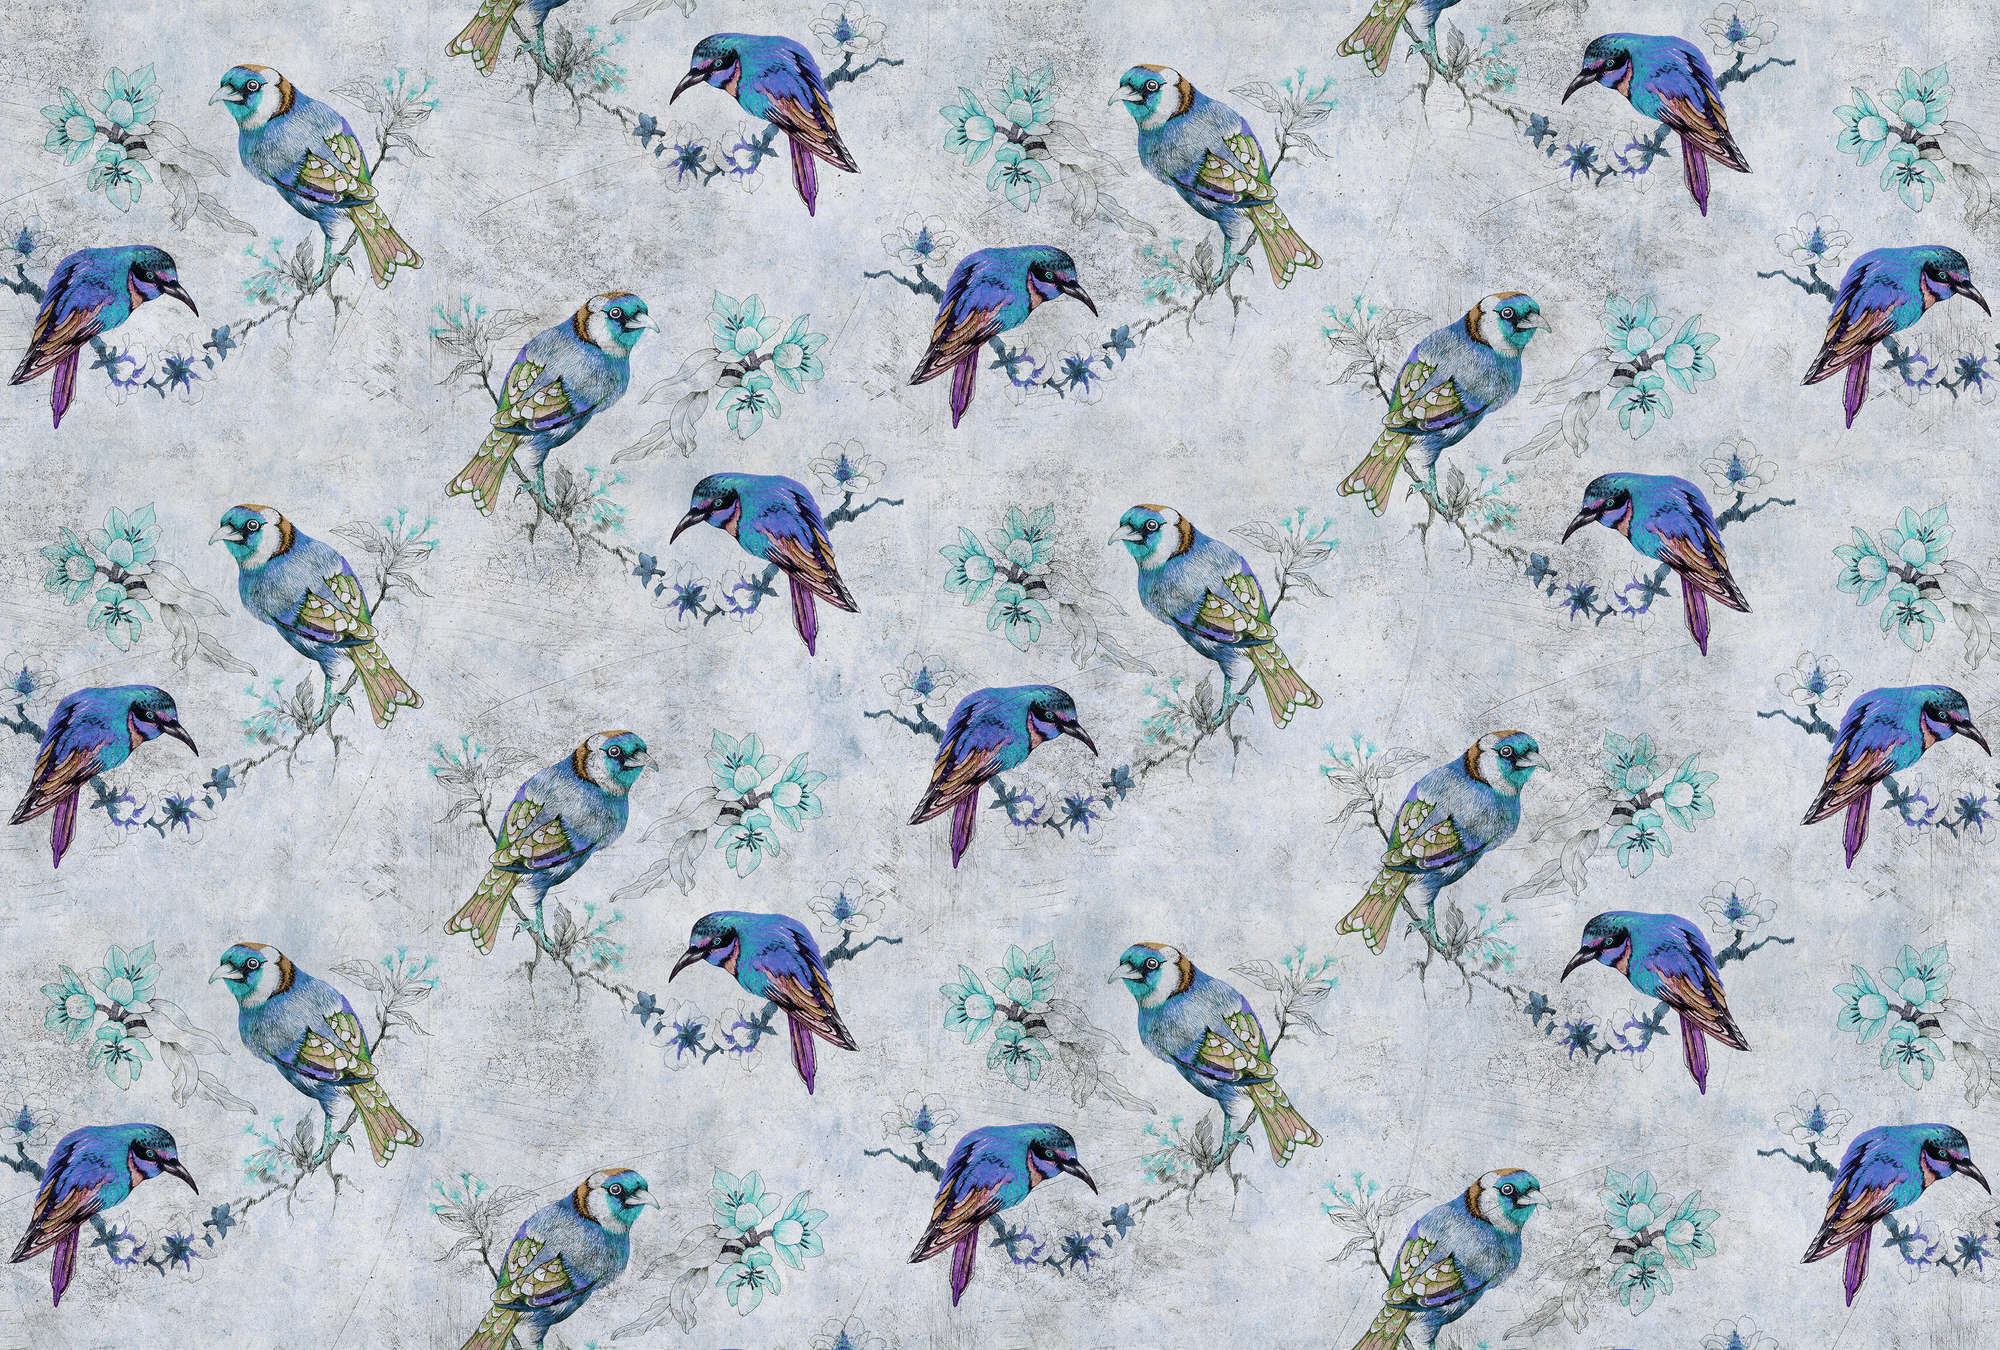             Love birds 1 - Fototapete Vogel-Muster im Zeichenstil in kratzer Struktur – Blau, Grau | Perlmutt Glattvlies
        